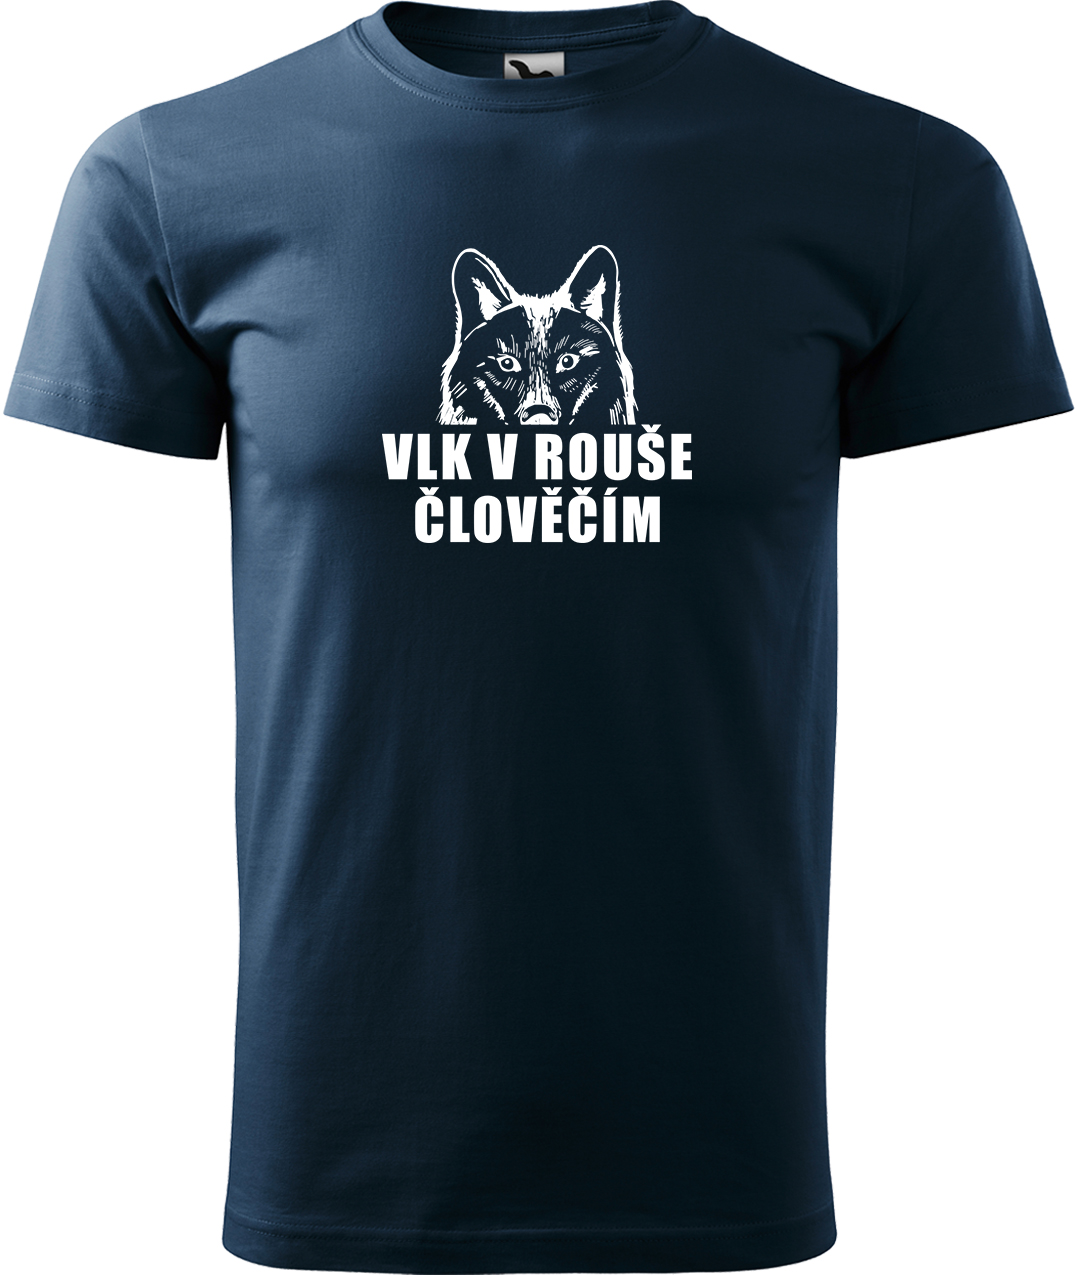 Pánské tričko s vlkem - Vlk v rouše člověčím Velikost: L, Barva: Námořní modrá (02), Střih: pánský